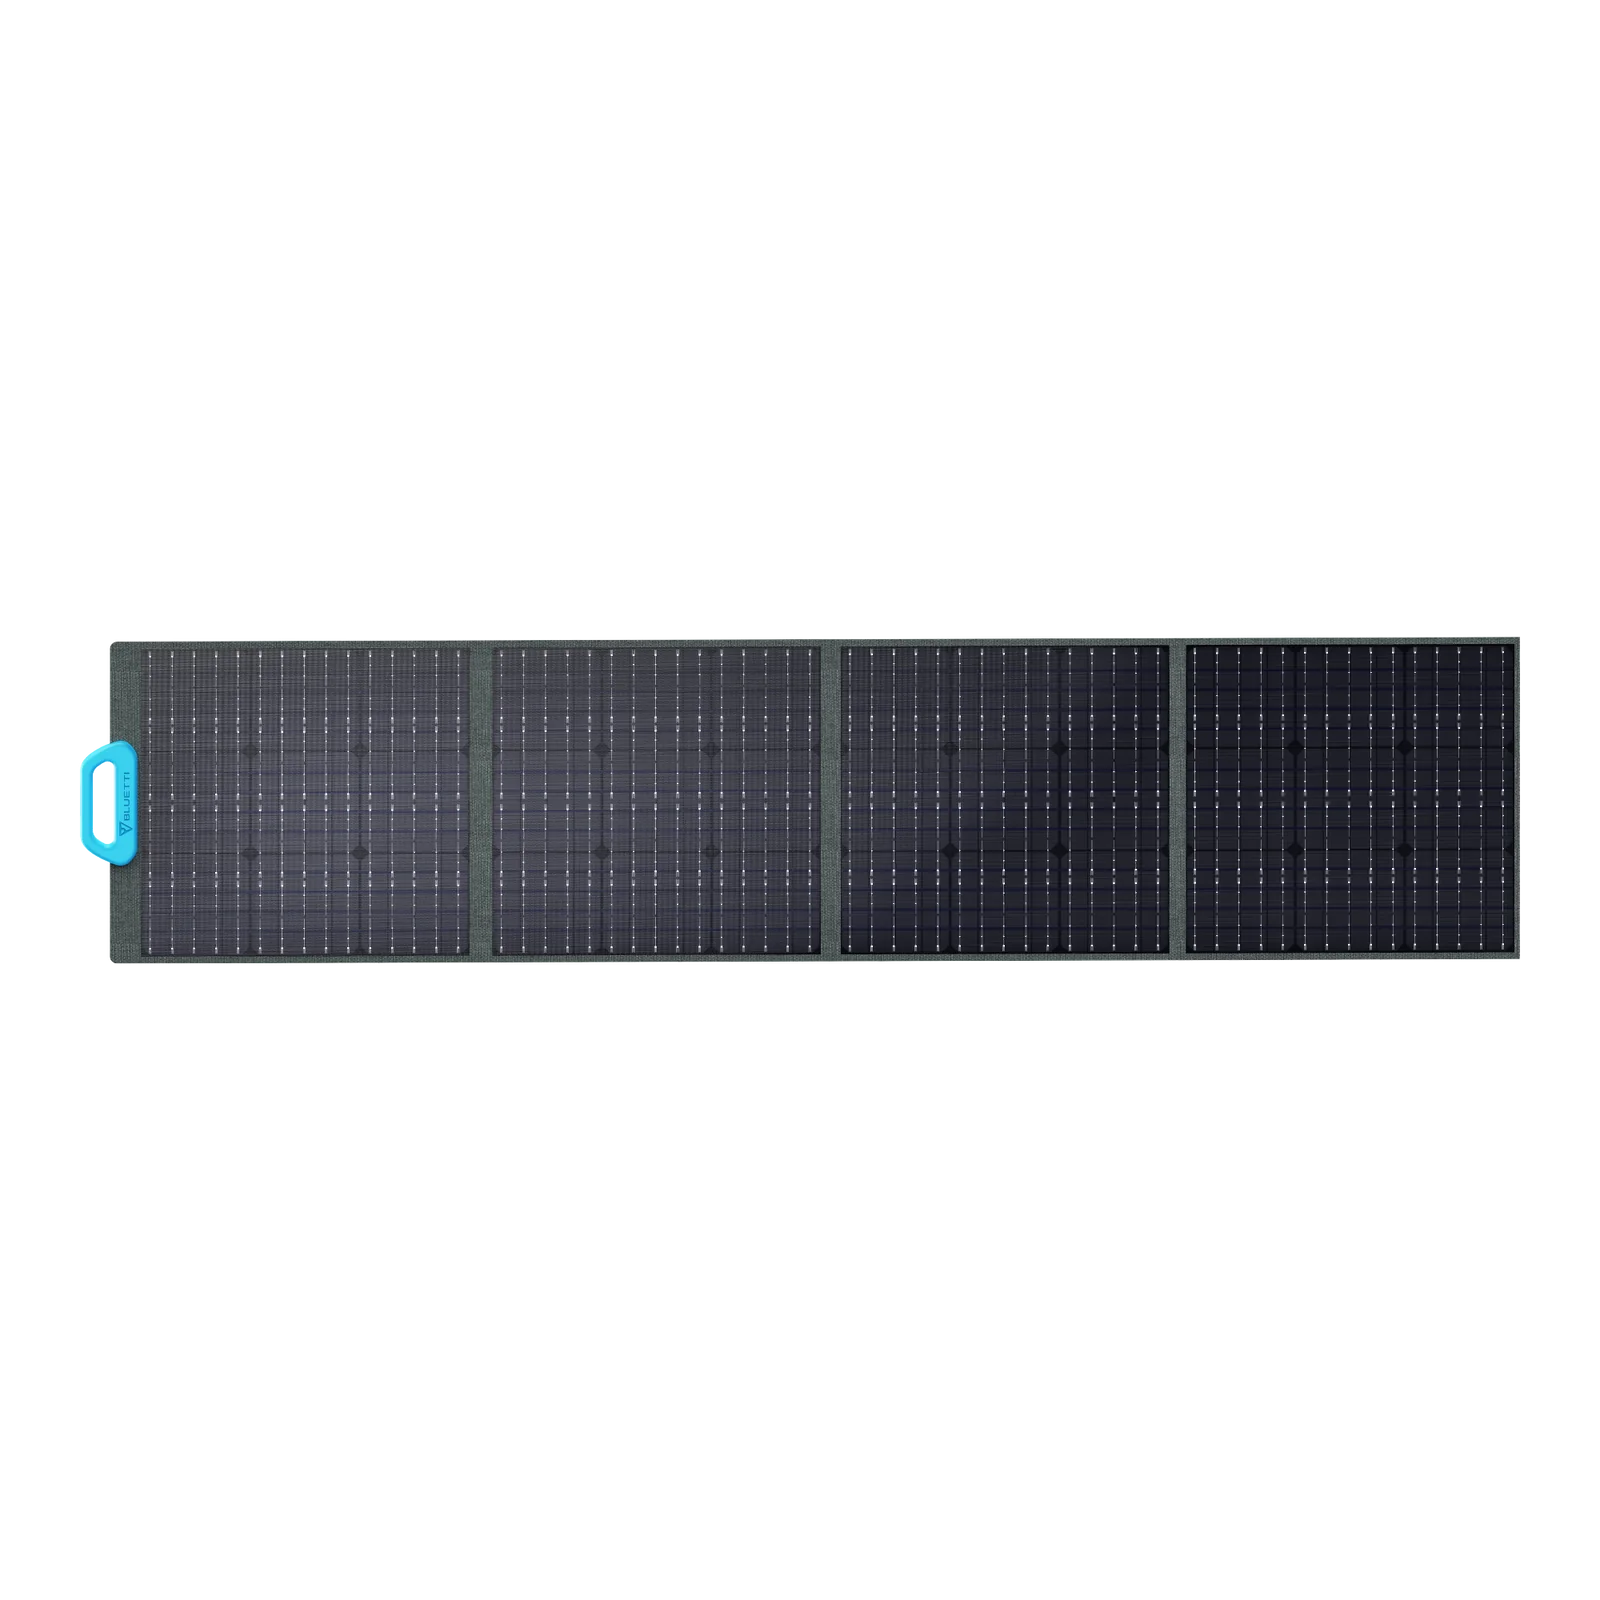 BLUETTI PV200 Solar Panel 200W